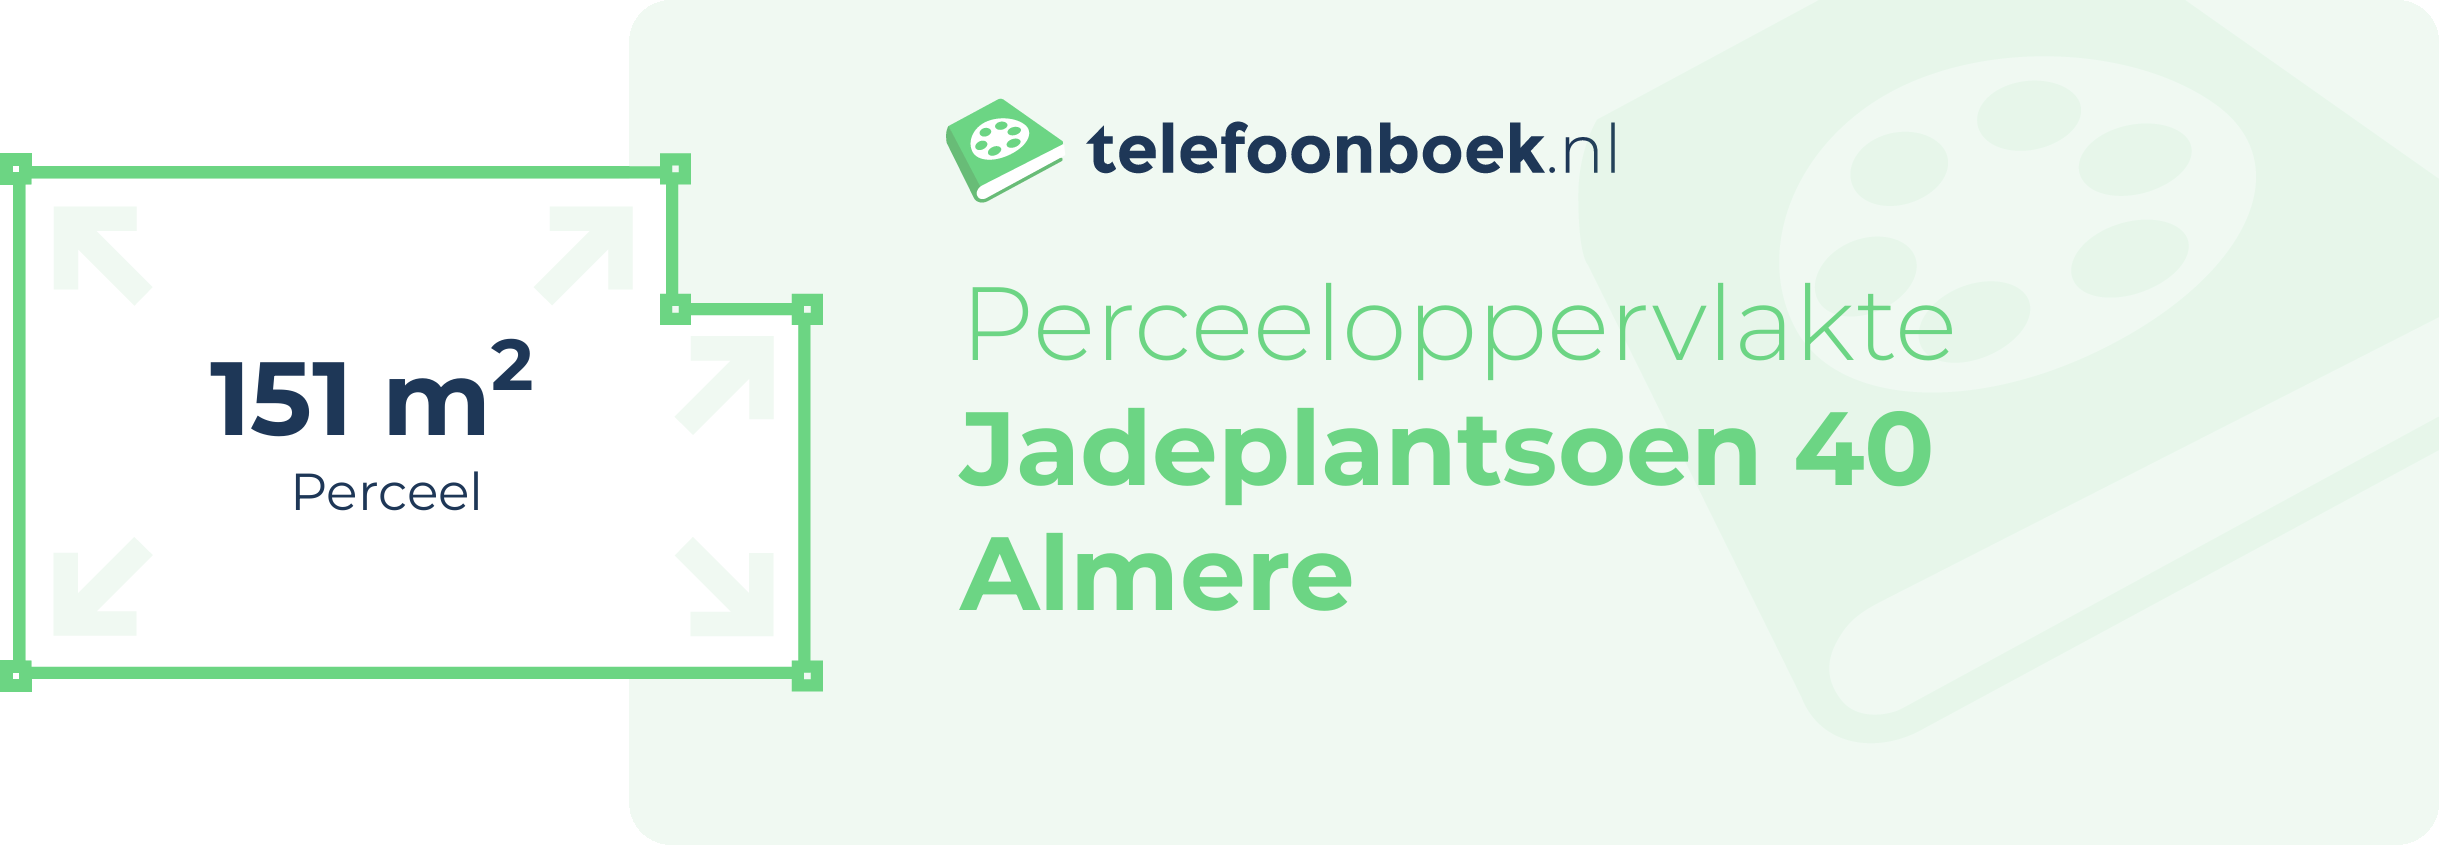 Perceeloppervlakte Jadeplantsoen 40 Almere